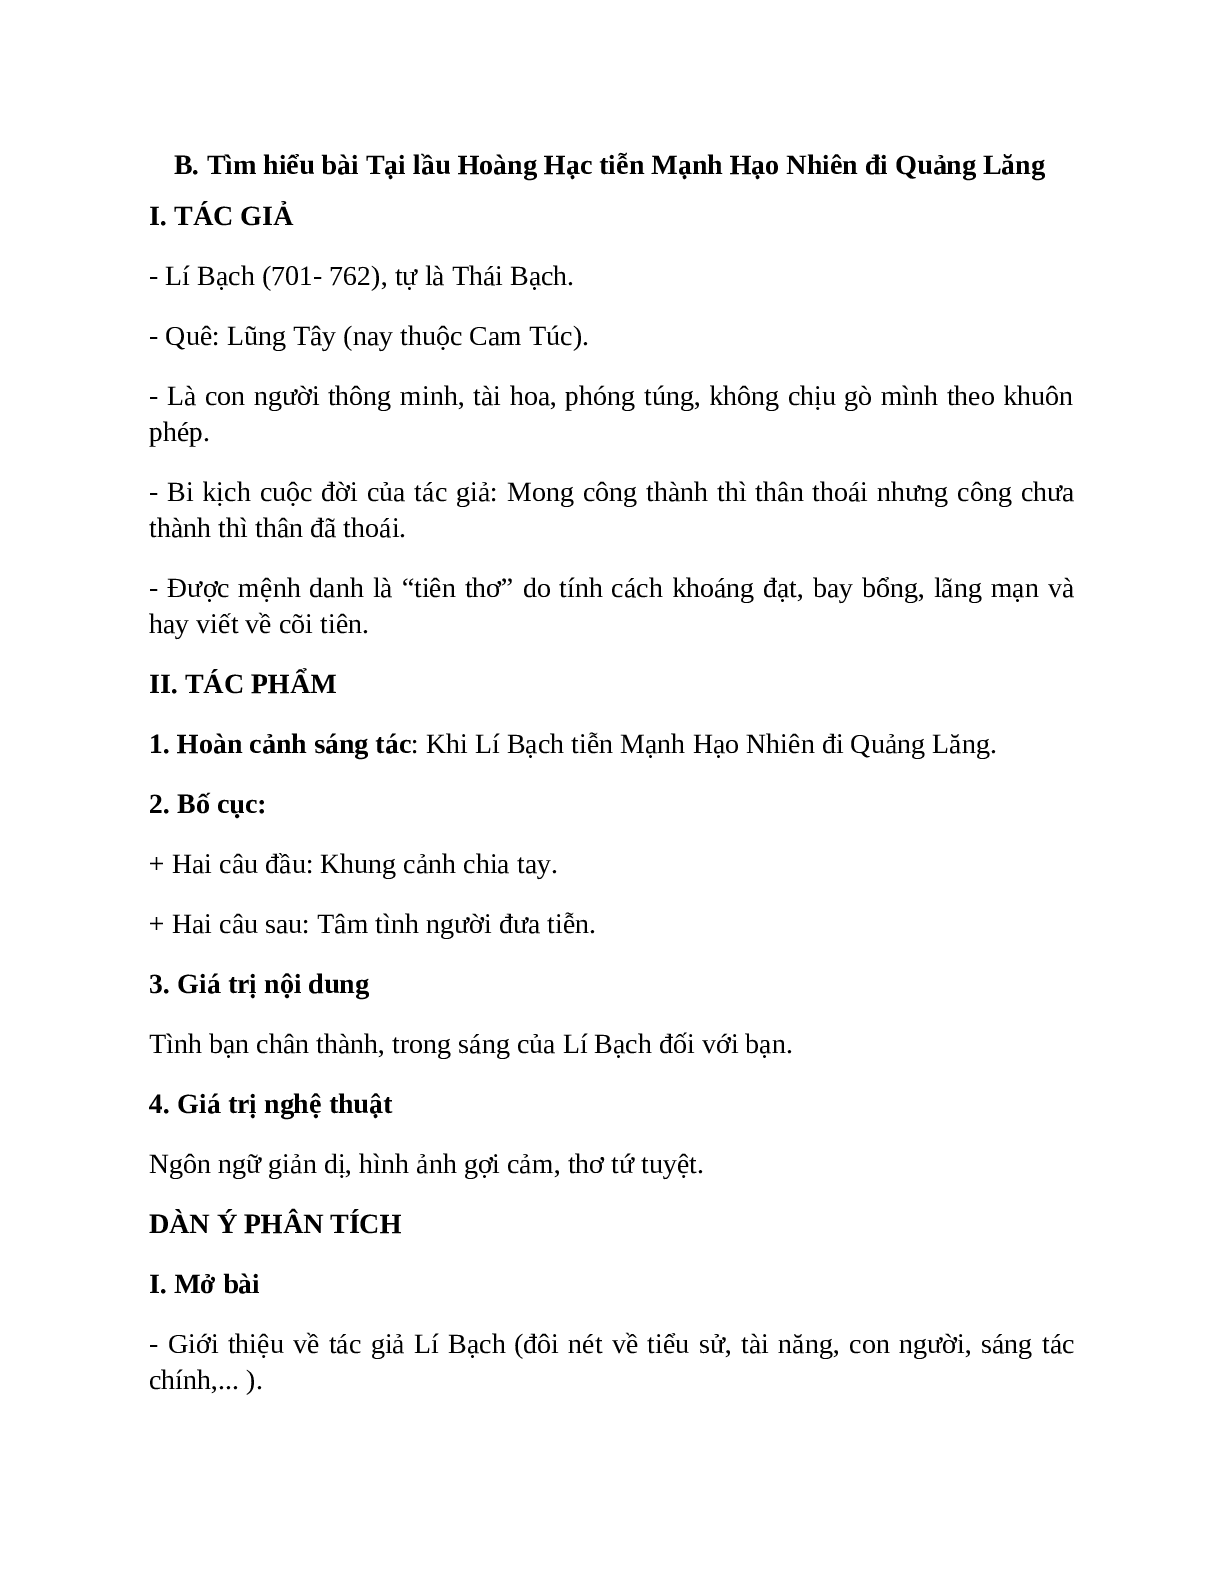 Sơ đồ tư duy bài Tại lầu Hoàng Hạc tiễn Mạnh Hạo Nhiên đi Quảng Lăng dễ nhớ, ngắn nhất - Ngữ văn lớp 10 (trang 2)